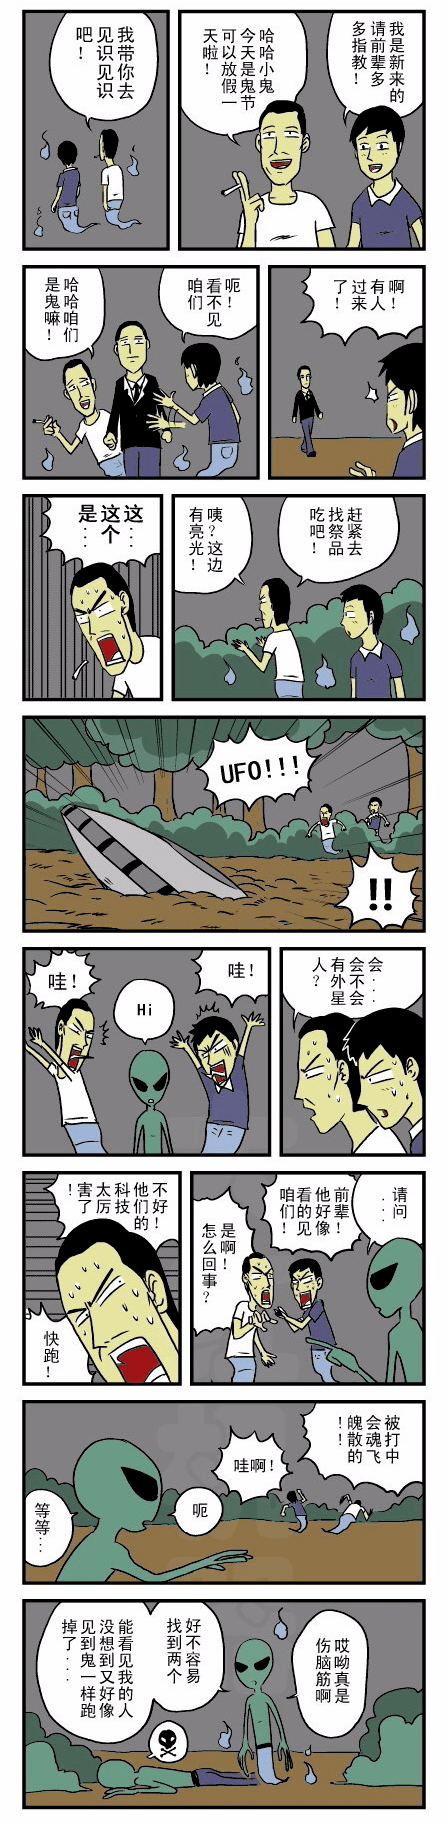 【短篇漫画】遇到外星人的鬼_解说